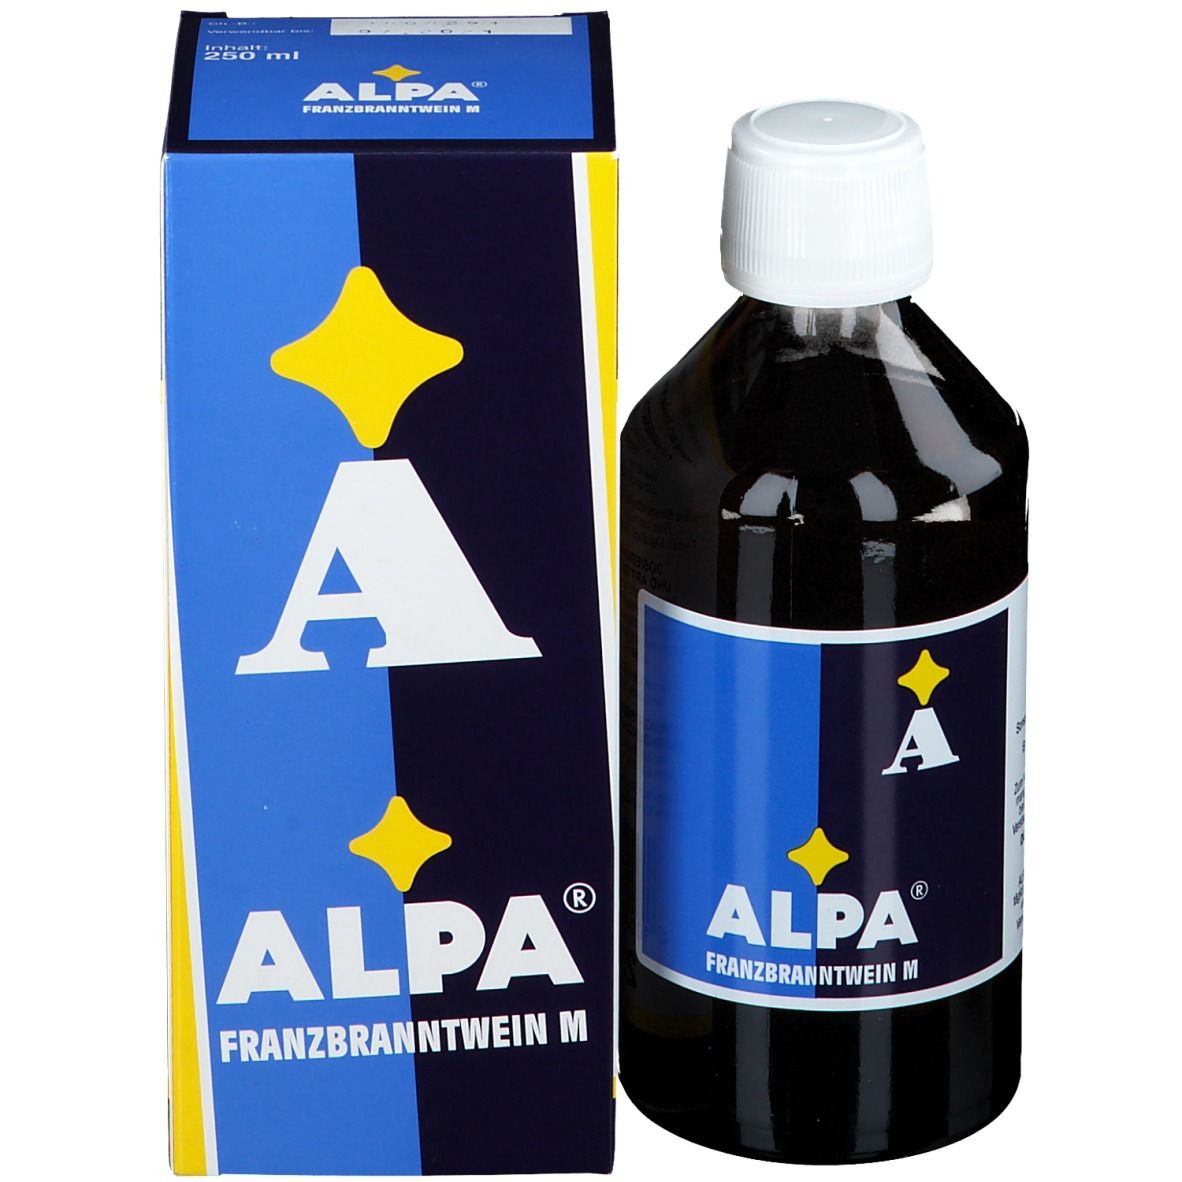 ALPA® Franzbranntwein M